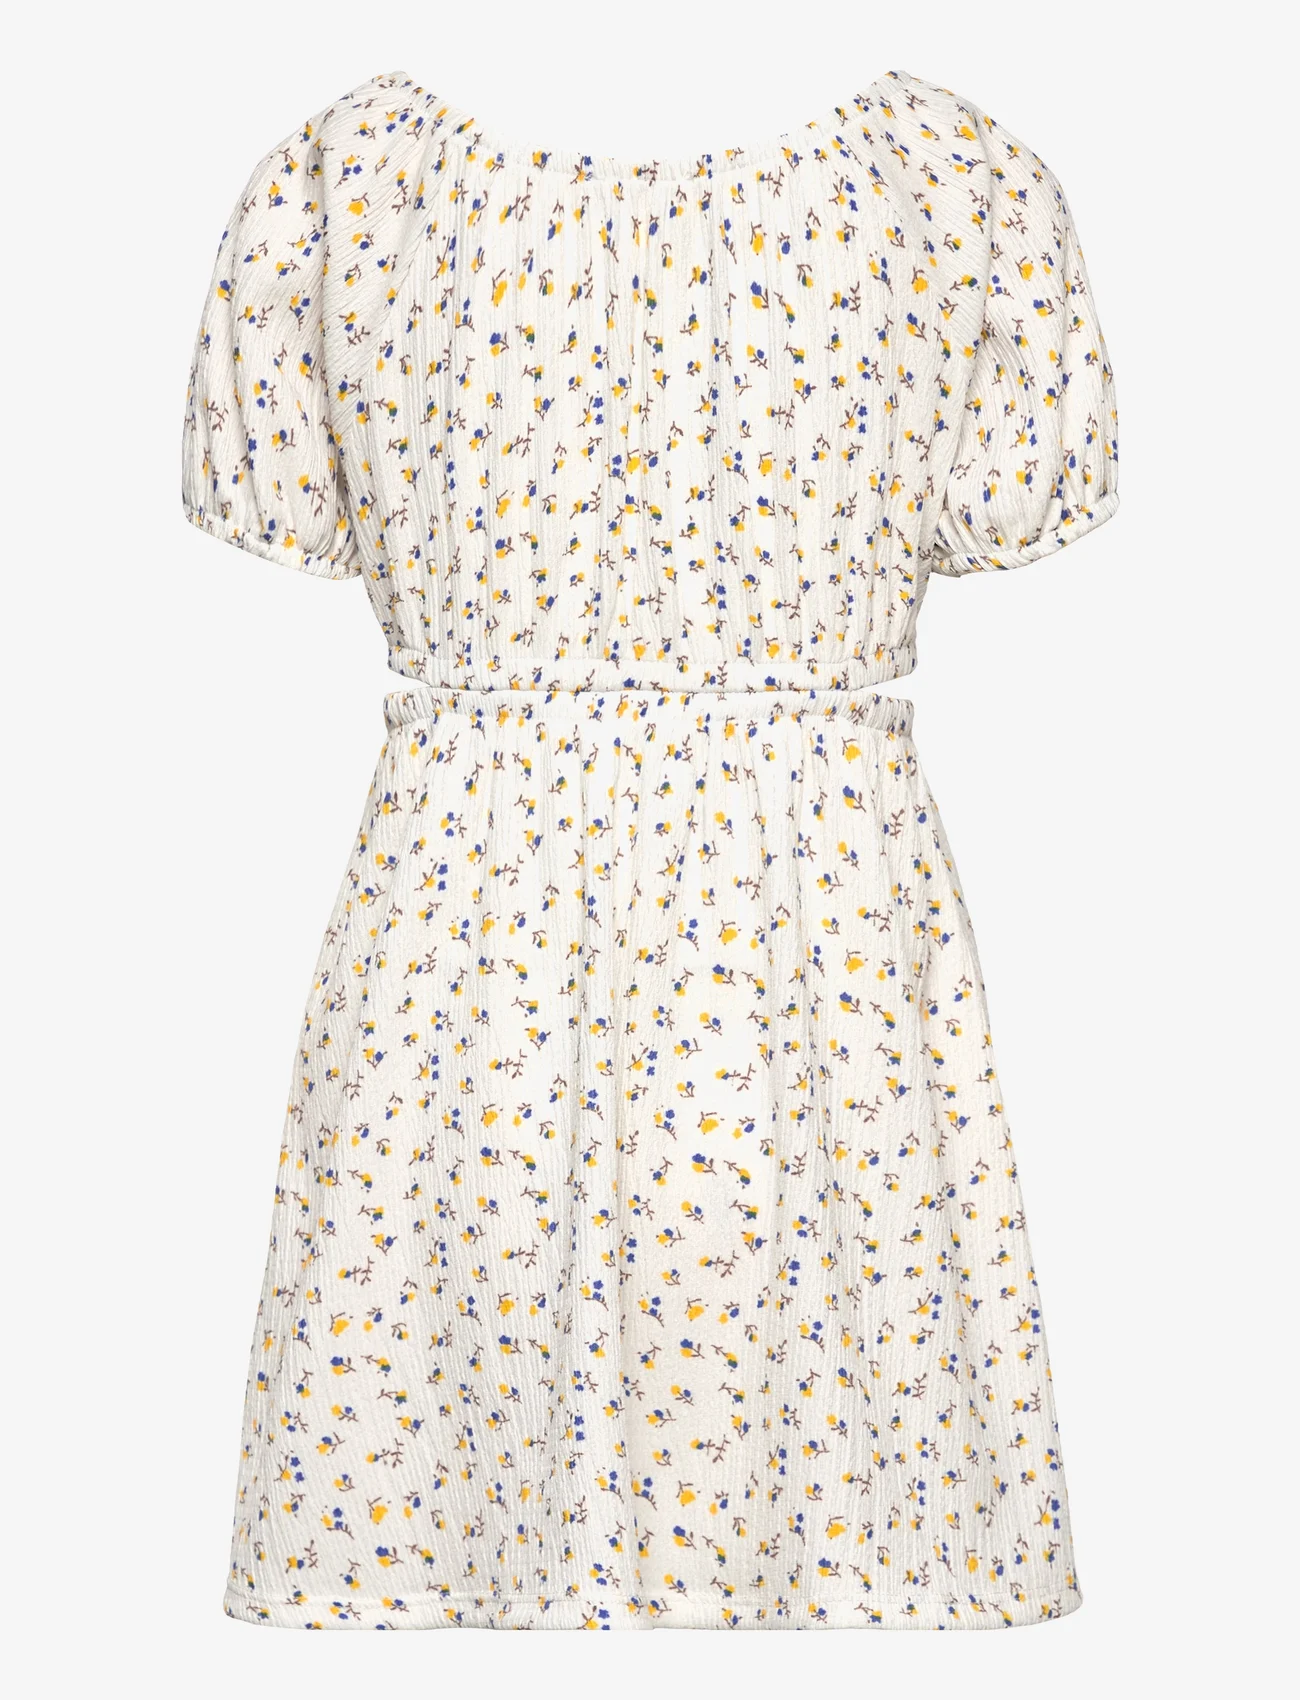 Mango - Floral dress with cut-out - kurzärmelige freizeitkleider - light beige - 1